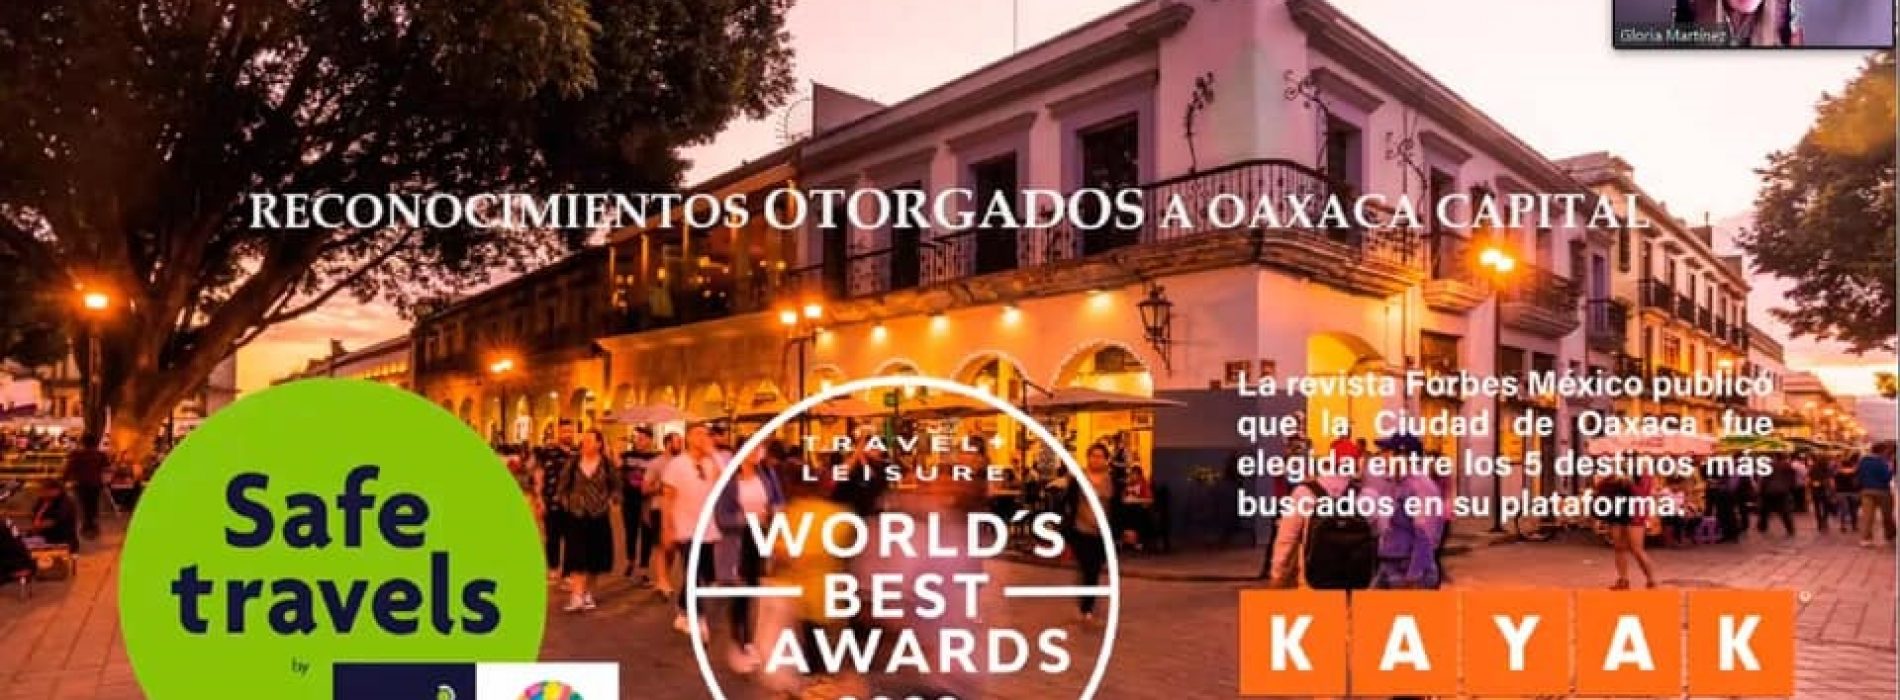 Oaxaca de Juárez se consolida como el mejor destino turístico de México